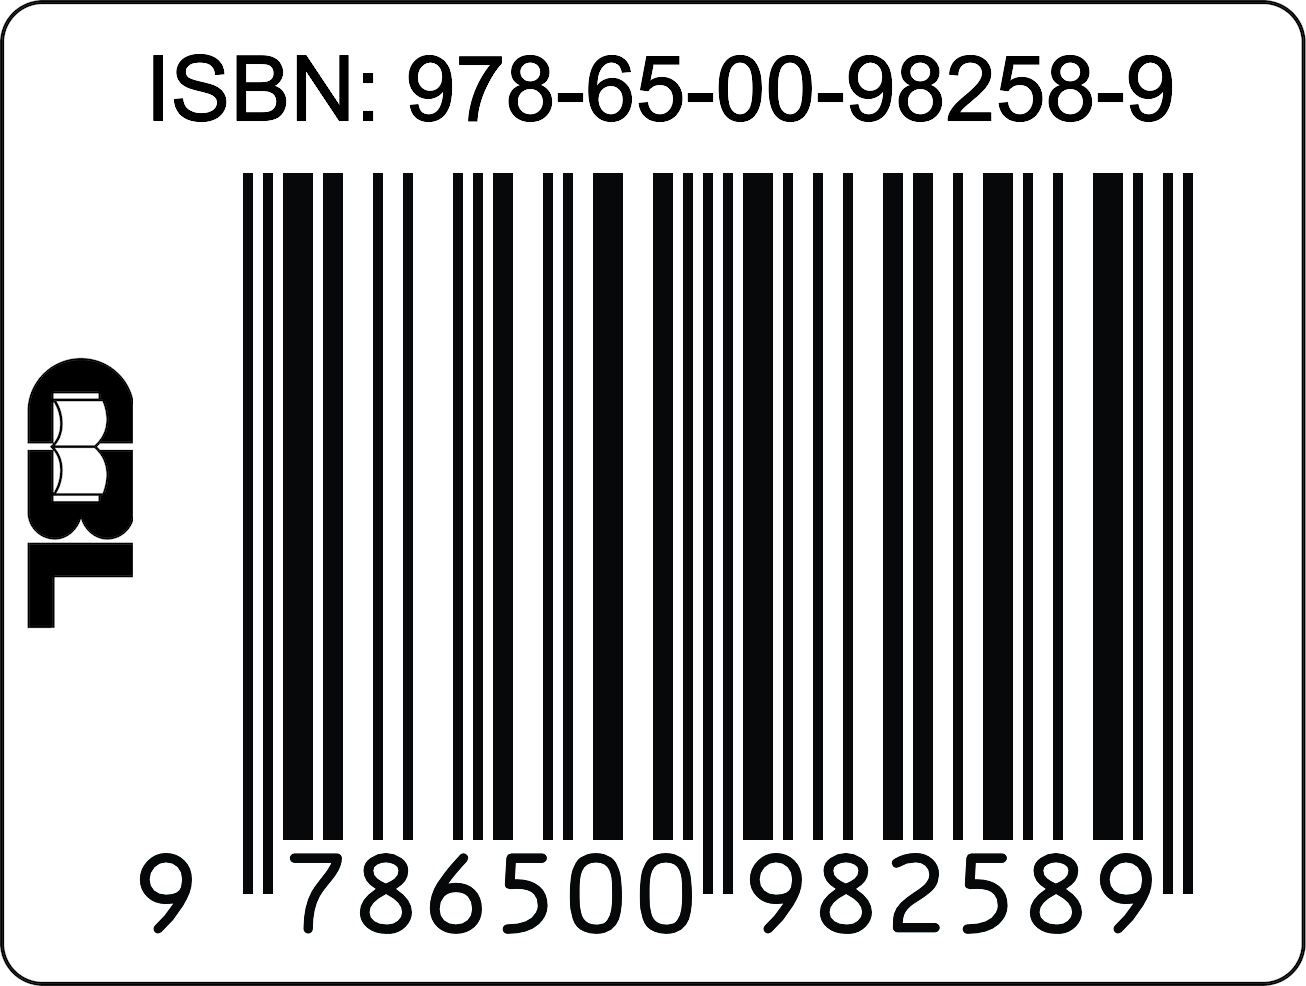 ISBN17a